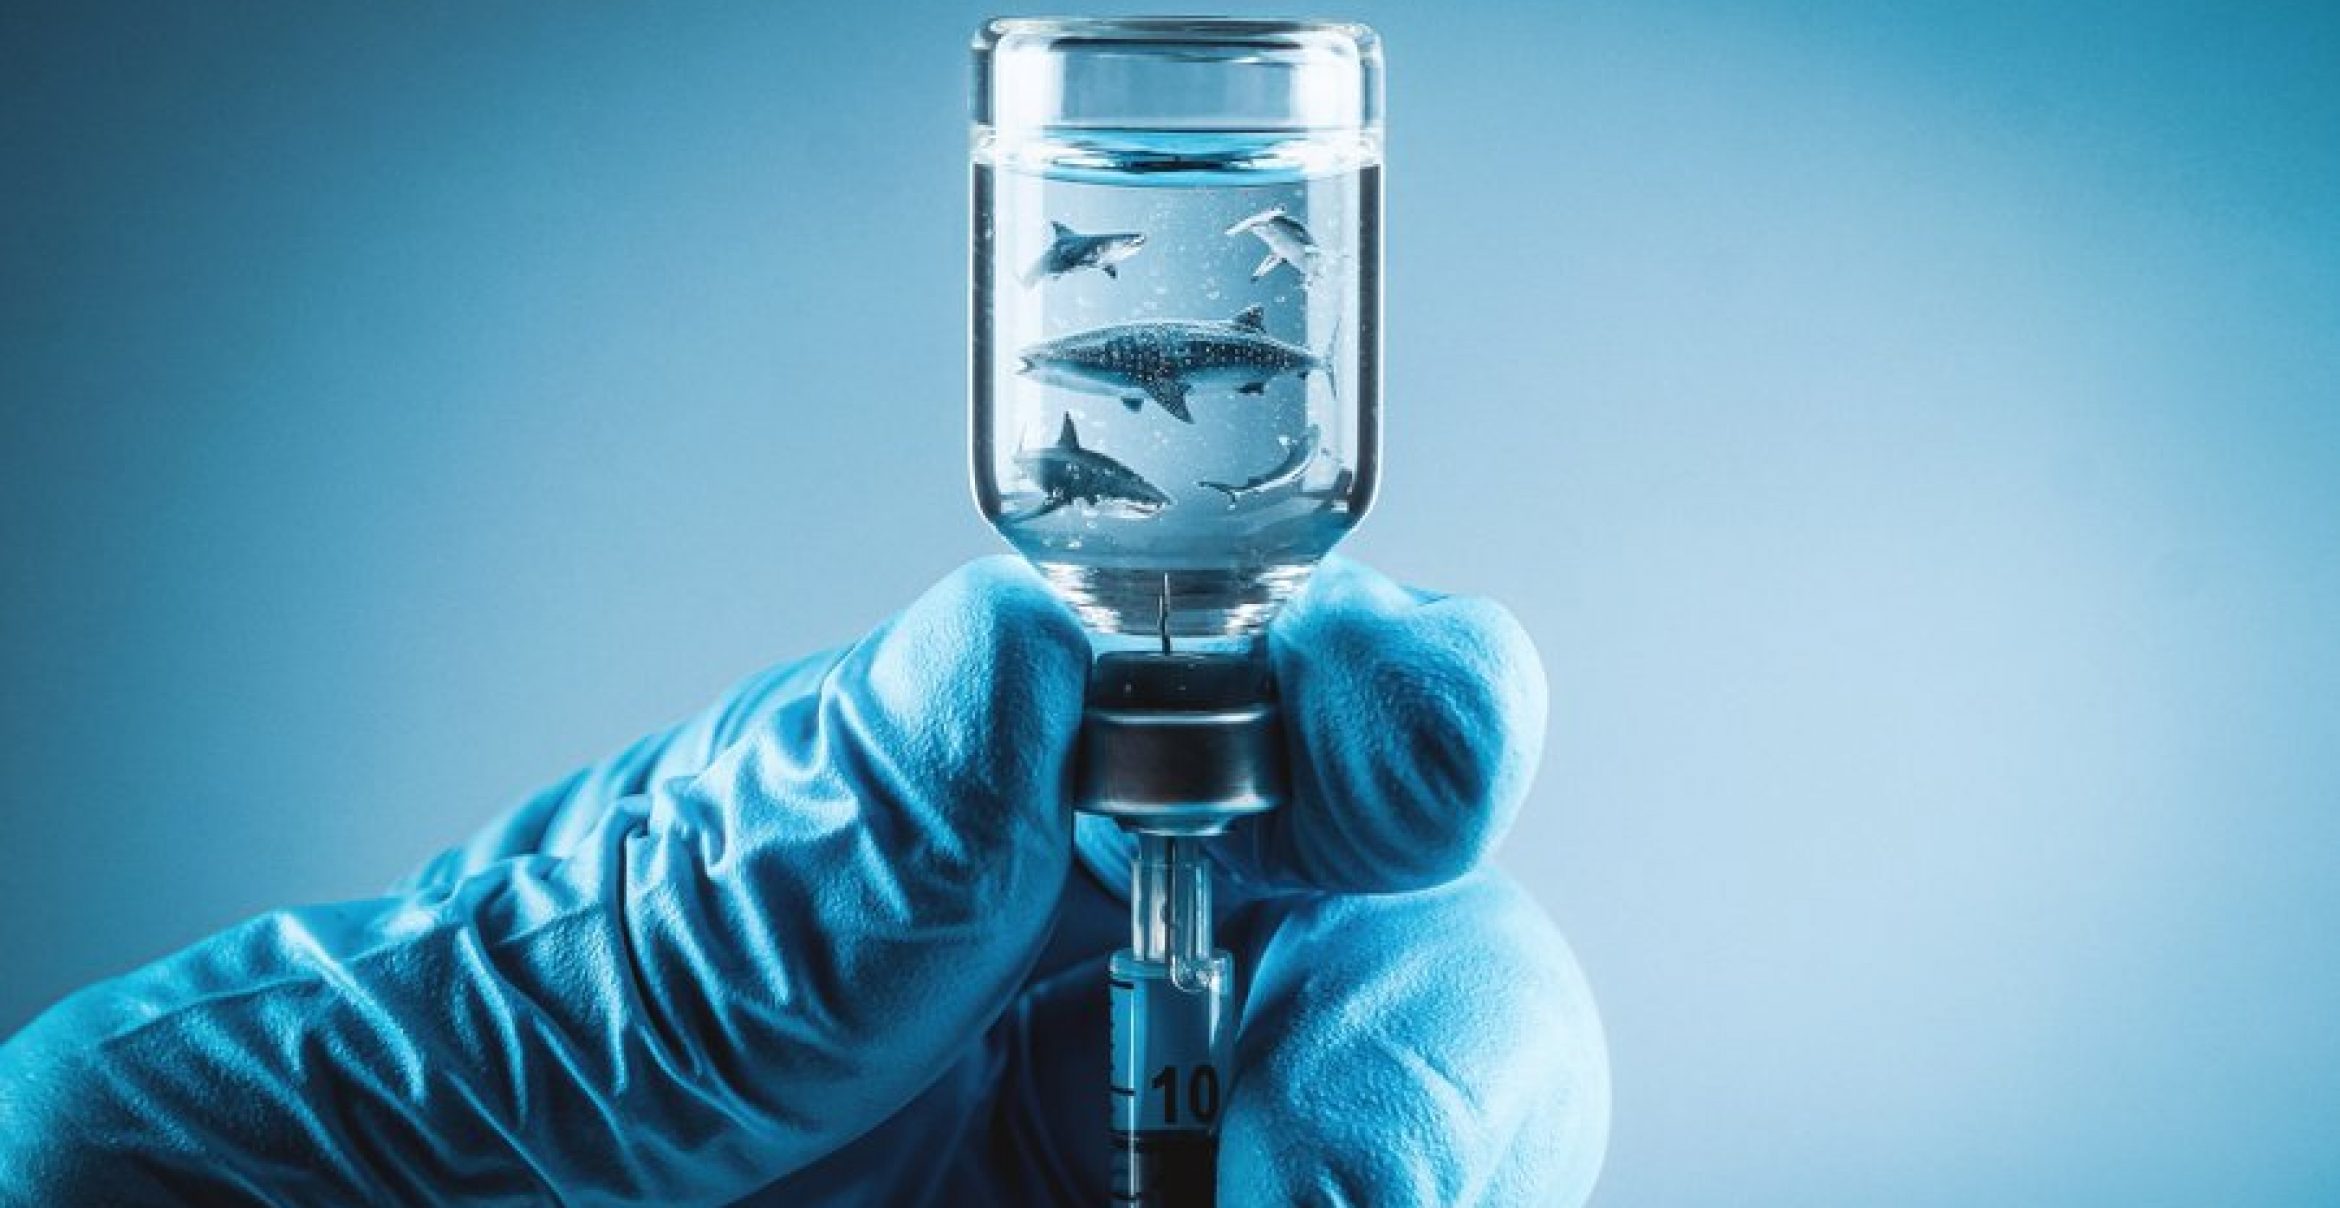 Haie werden für Impfstoffe getötet, doch Grazer Forscher*innen entdecken Alternative